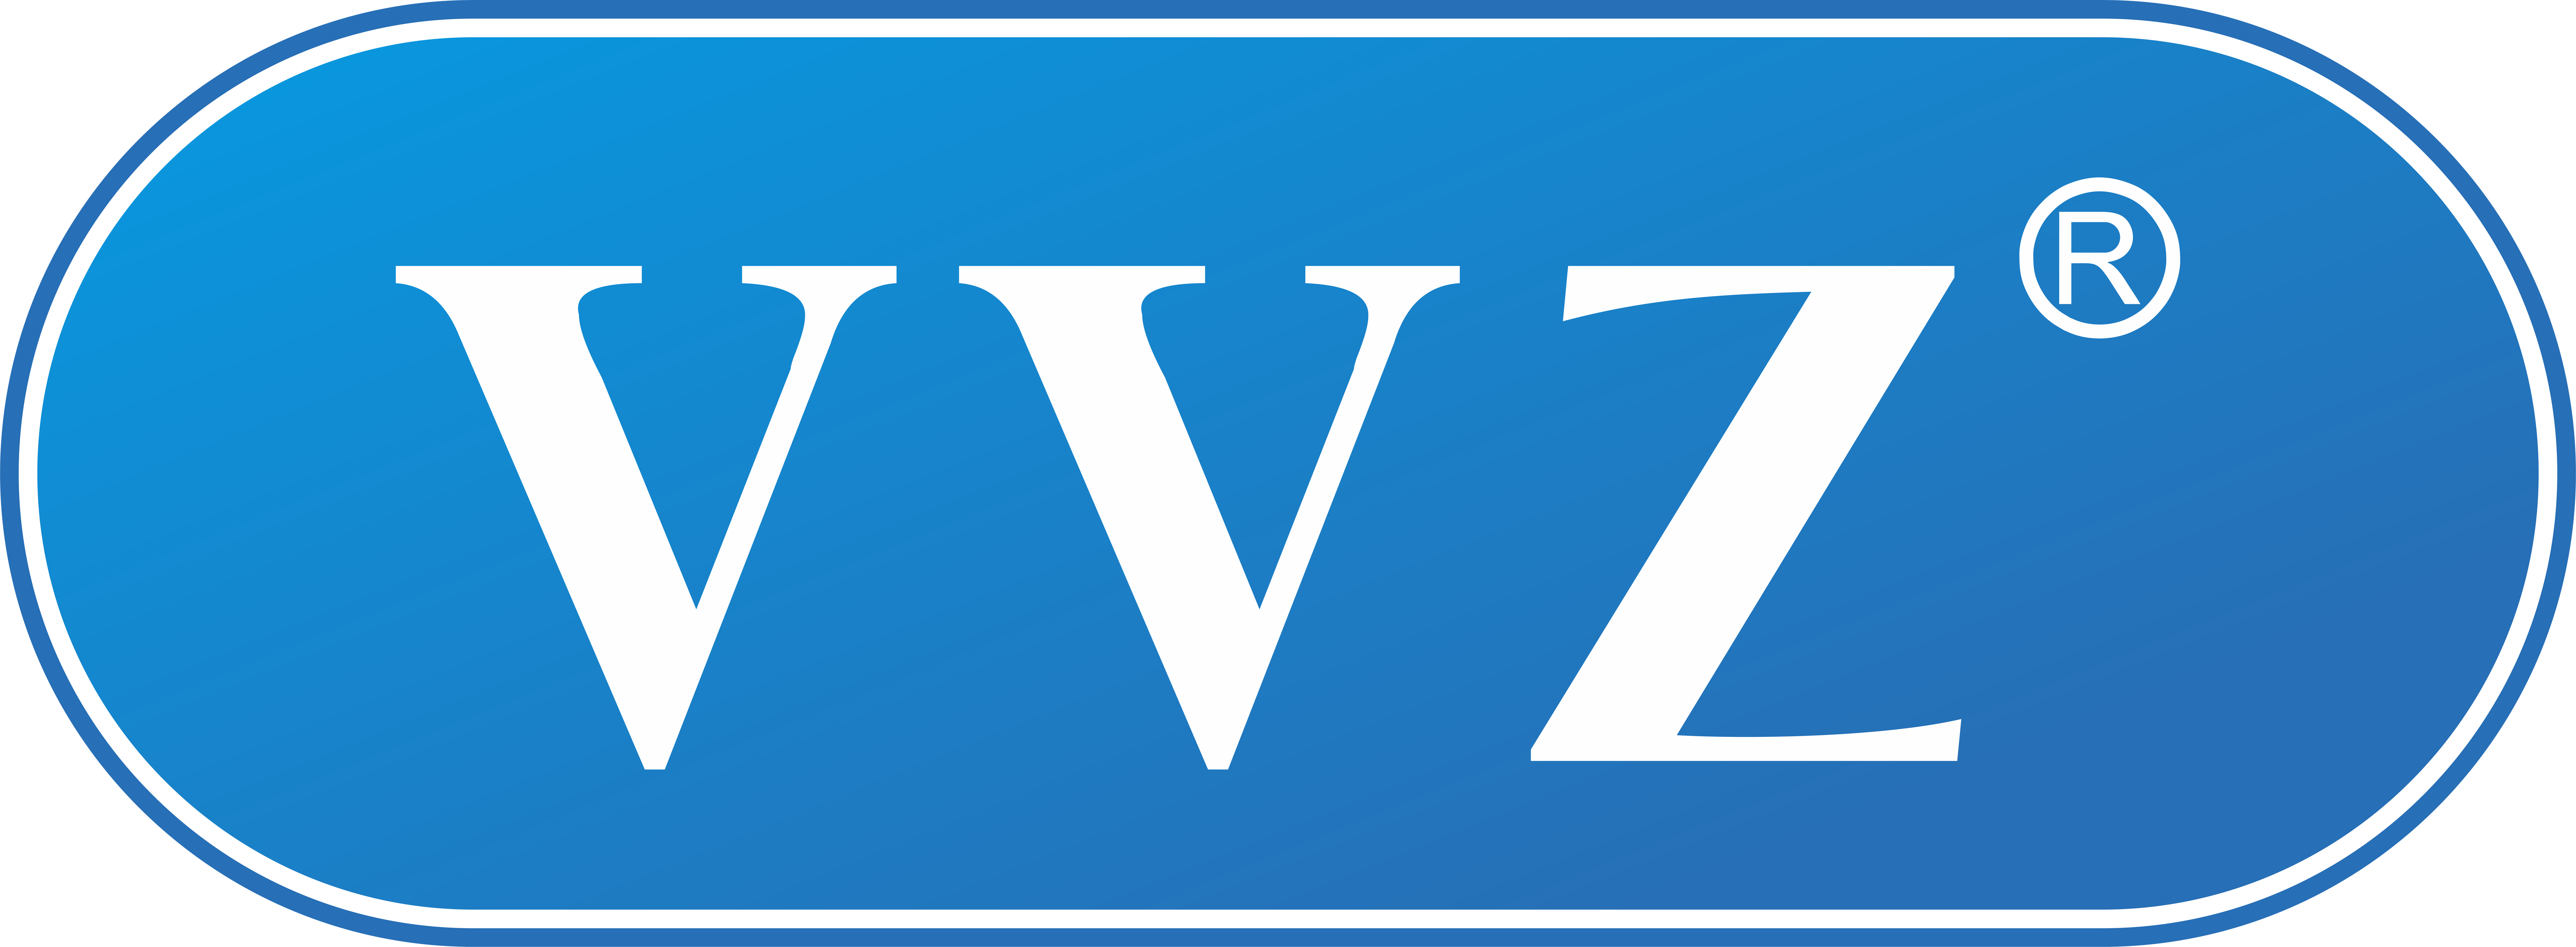 VVZ – Phụ kiện điện thoại chính hãng